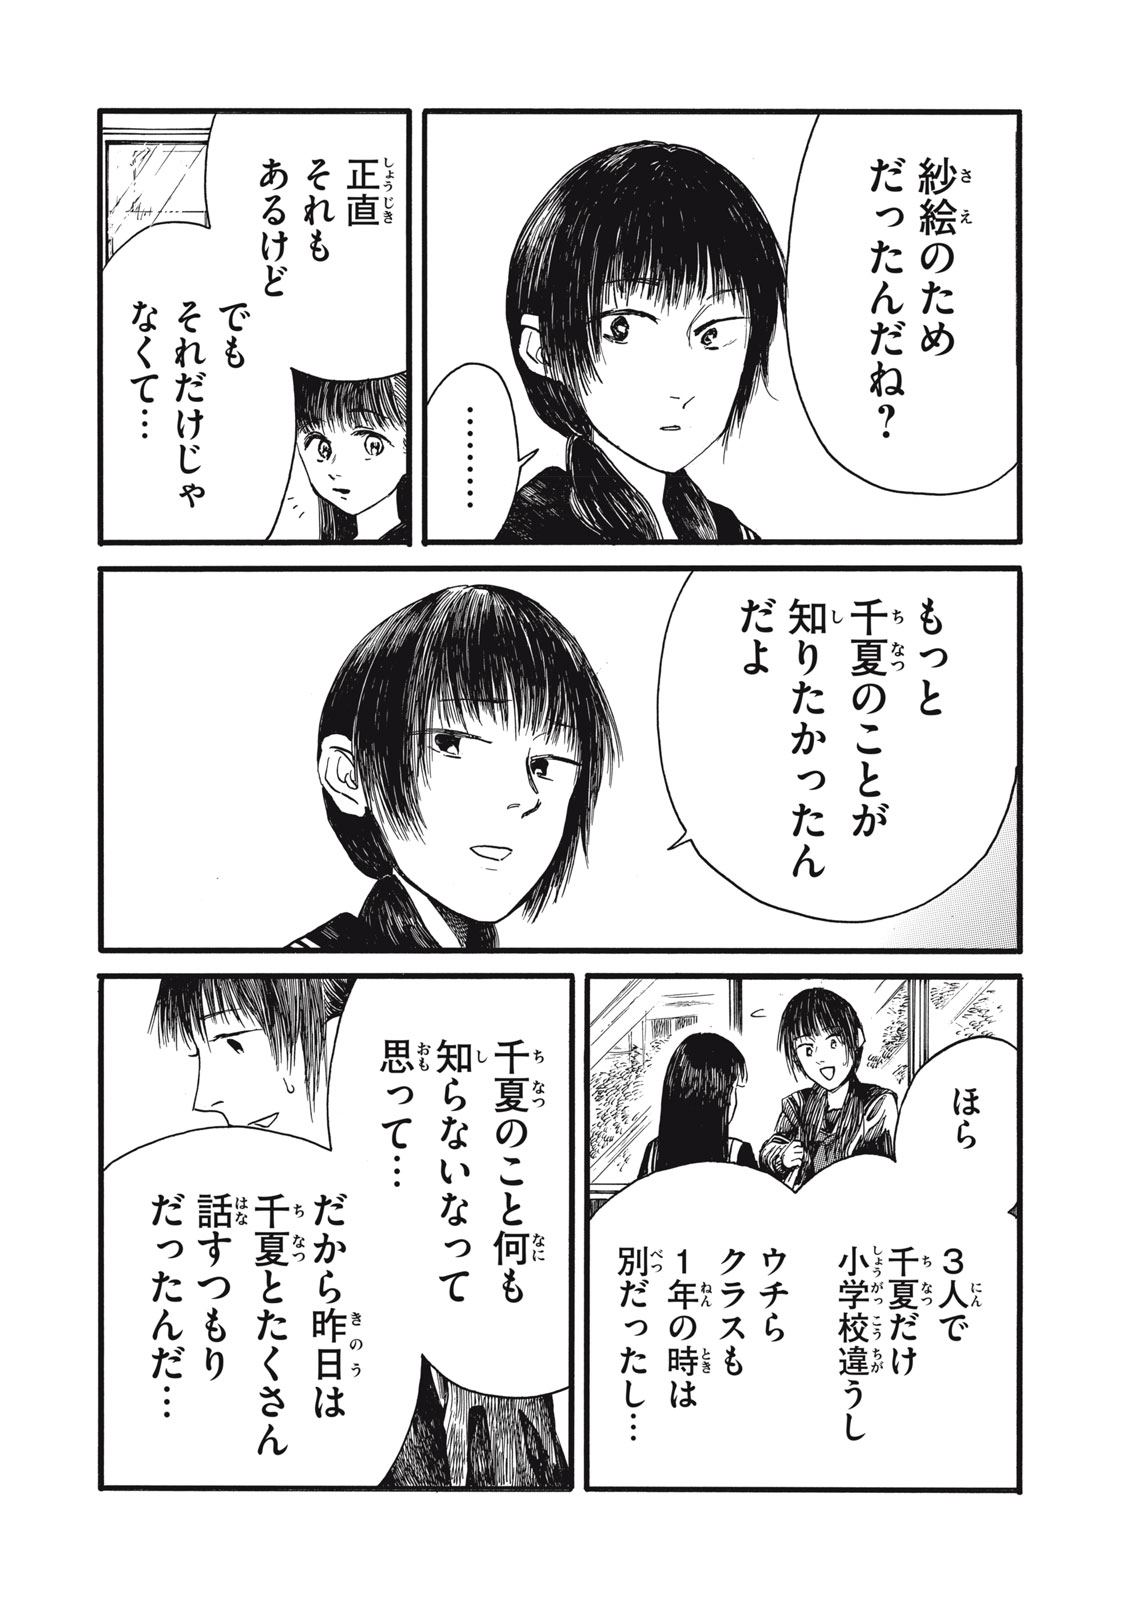 Watashi no Hara no Naka no Bakemono - Chapter 34 - Page 8